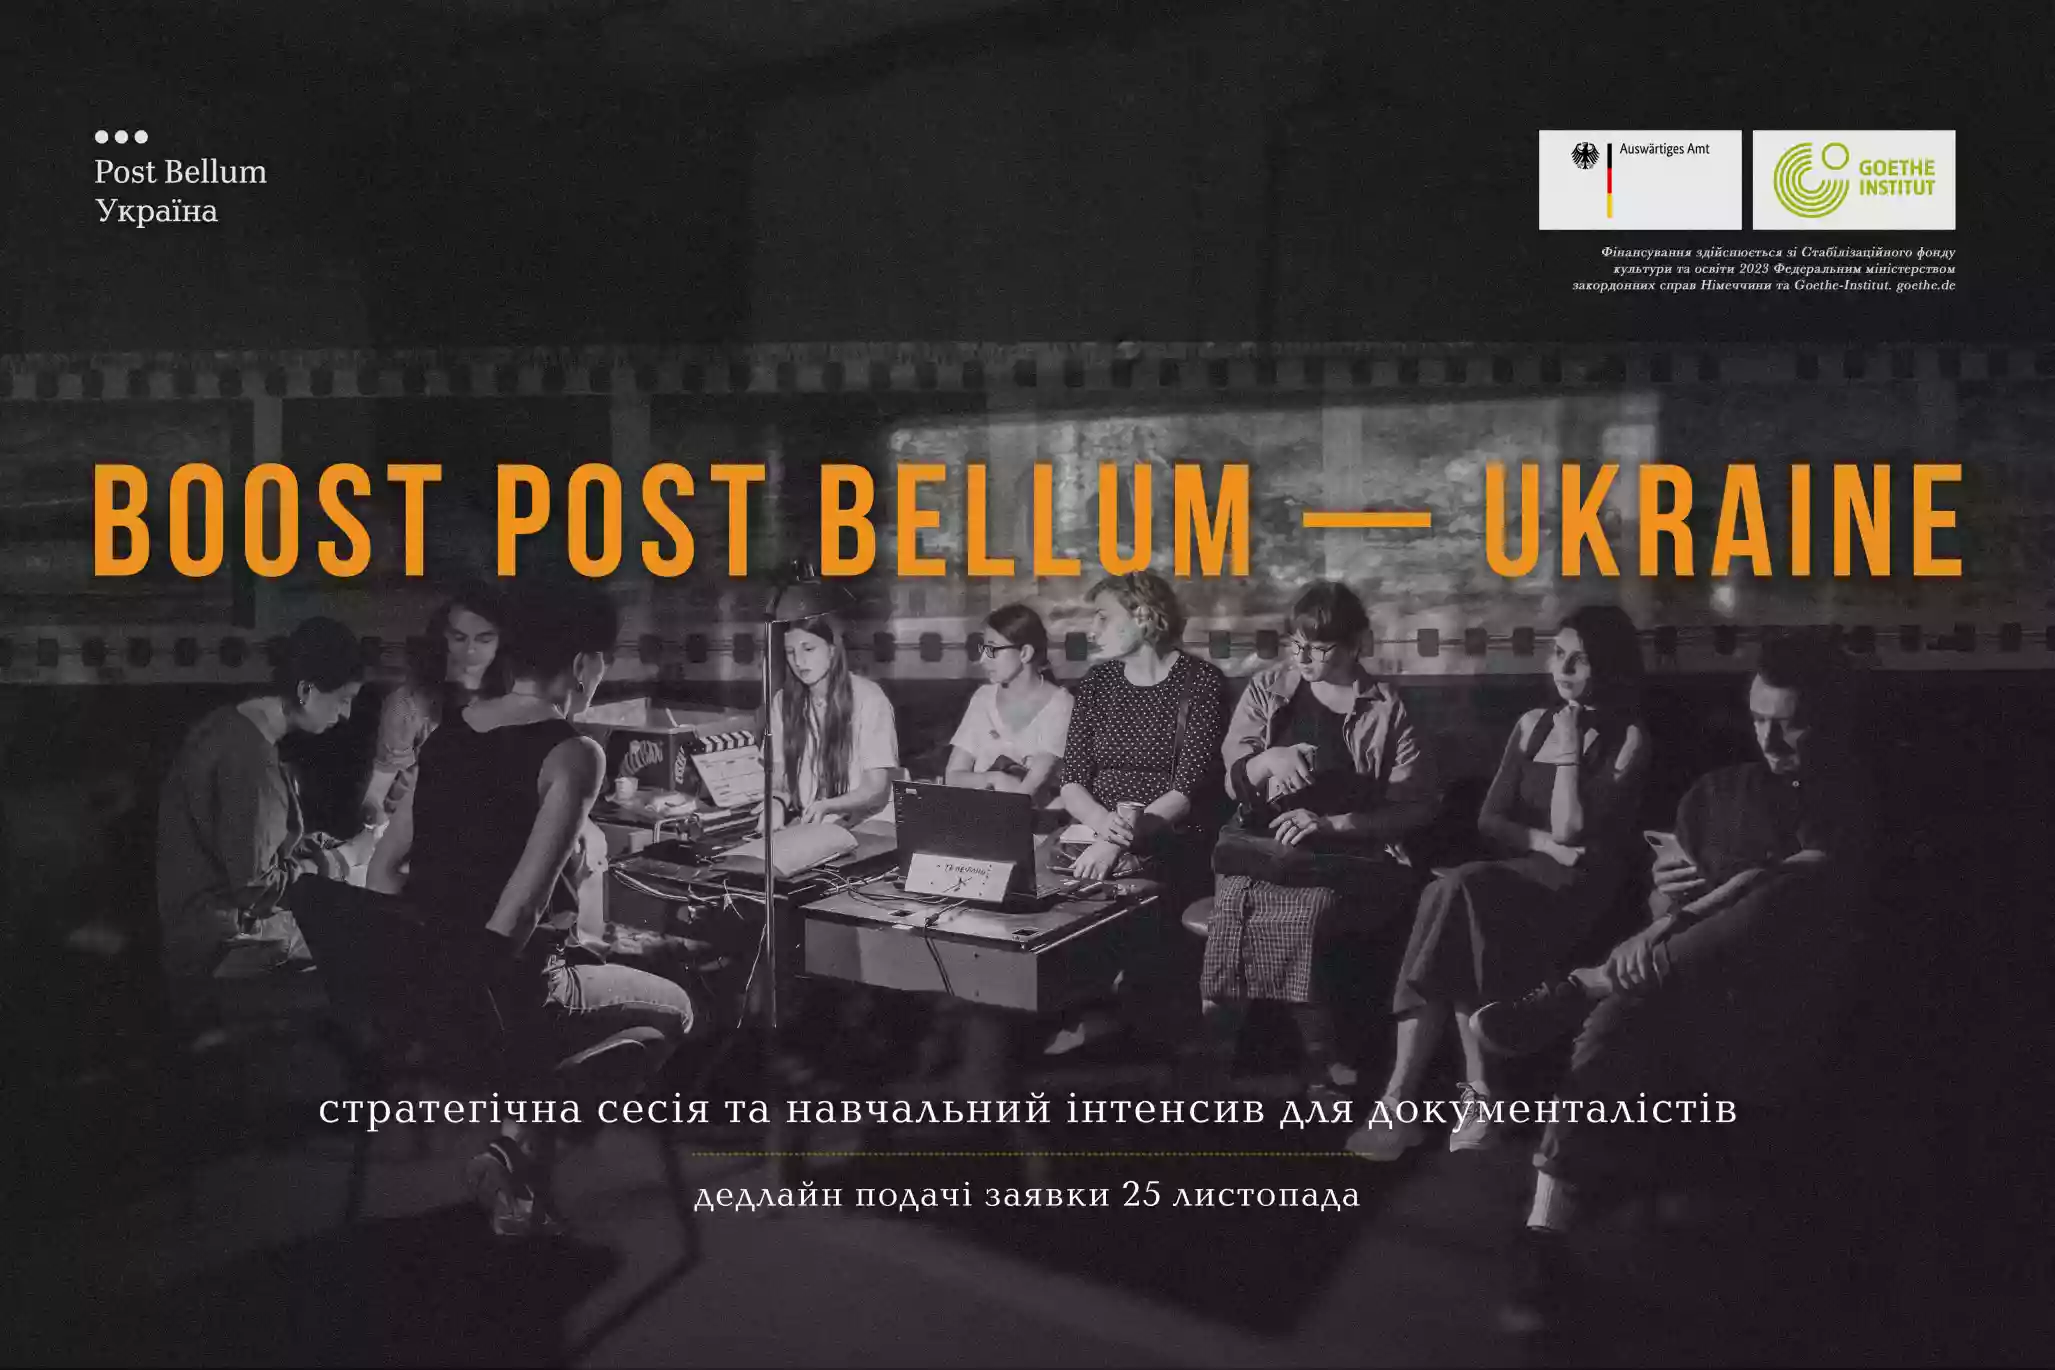 До 25 листопада — реєстрація на навчальний кемп для документалістів «Boost Post Bellum – Ukraine» в Карпатах